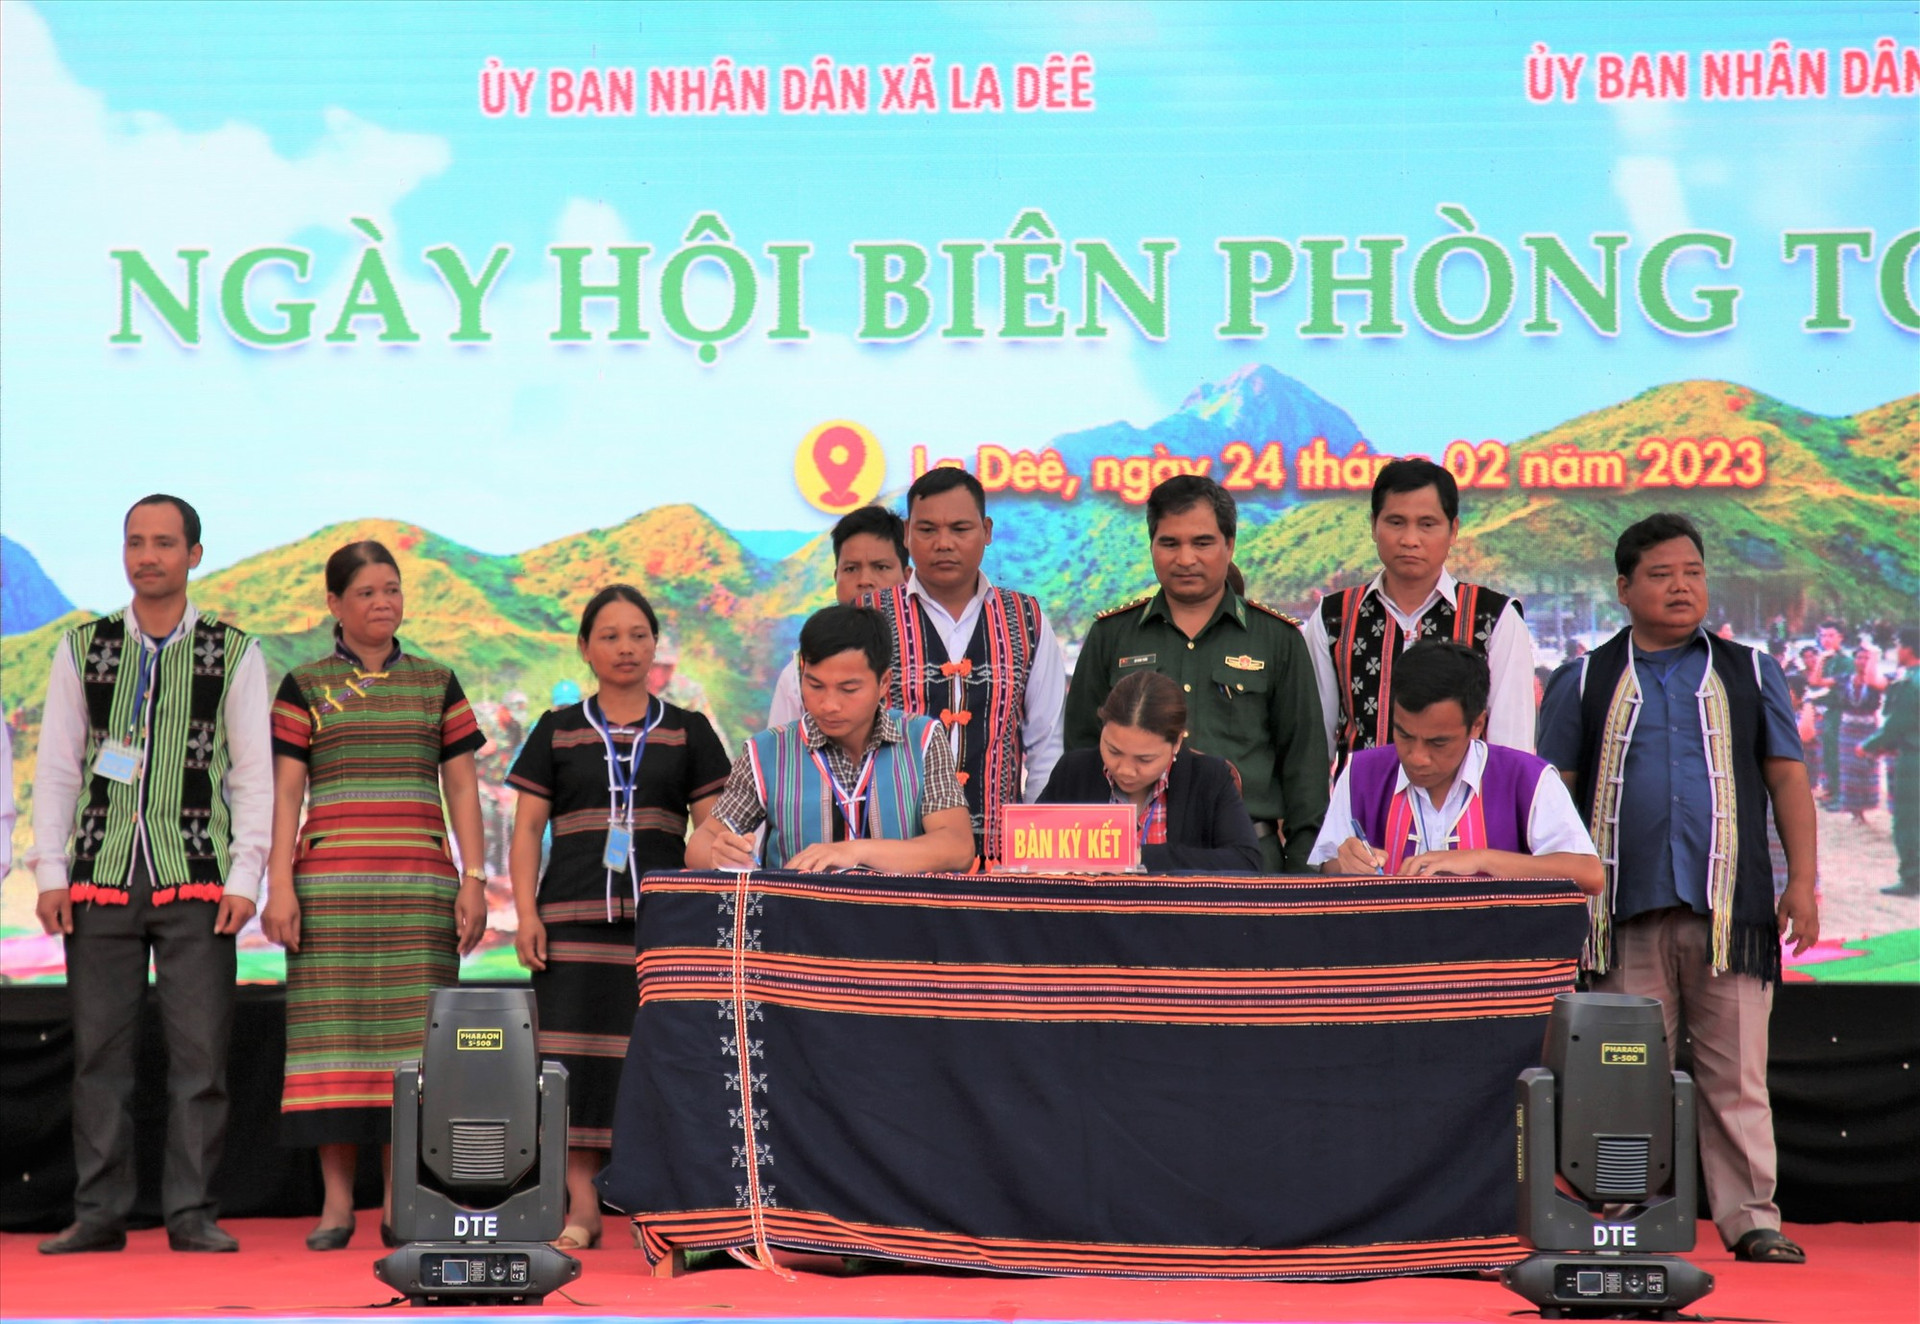 Đại diện các Tổ tự quản đường biên, cột mốc tại huyện Nam Giang tham gia ký kết bảo vệ biên giới an toàn trong “Ngày hội Biên phòng toàn dân” được tổ chức tại xã La Dêê. Ảnh: ĐĂNG NGỌC